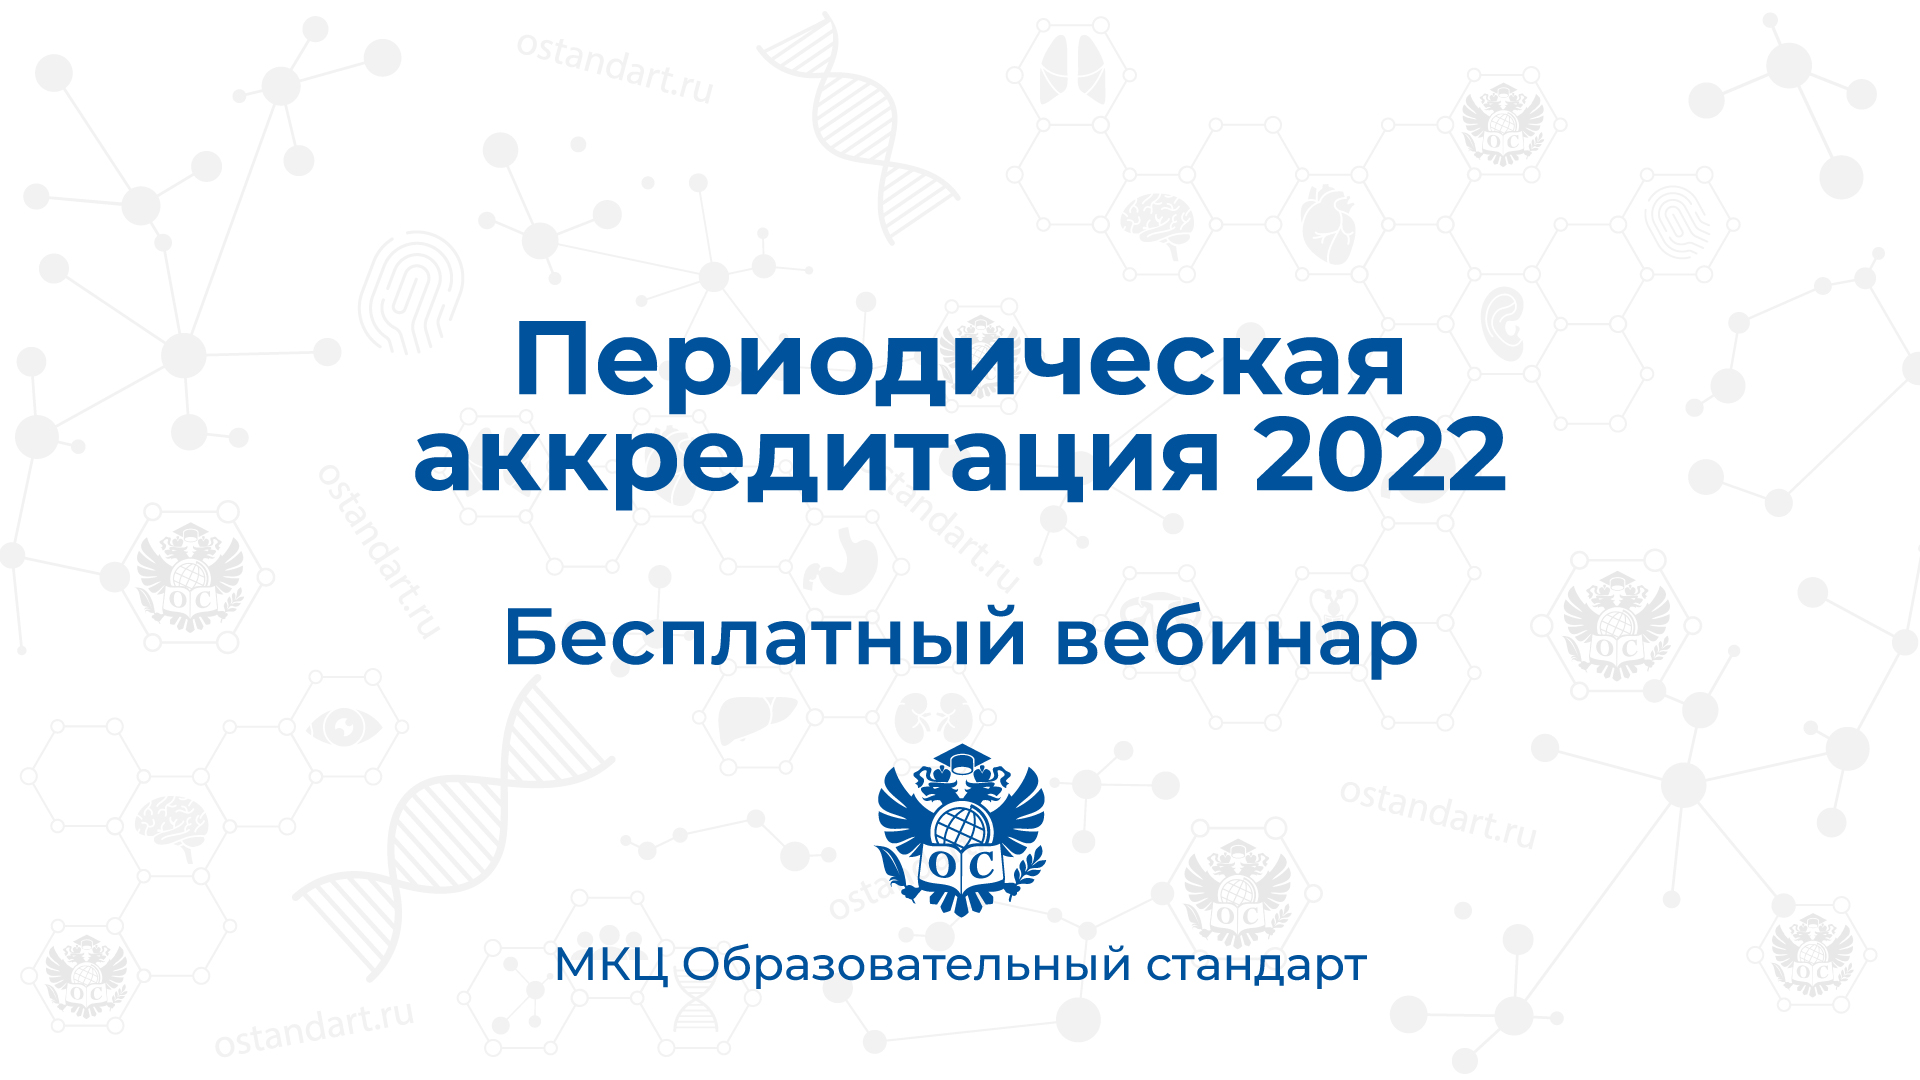 бесплатный вебинар периодическая аккредитация 2022 2023